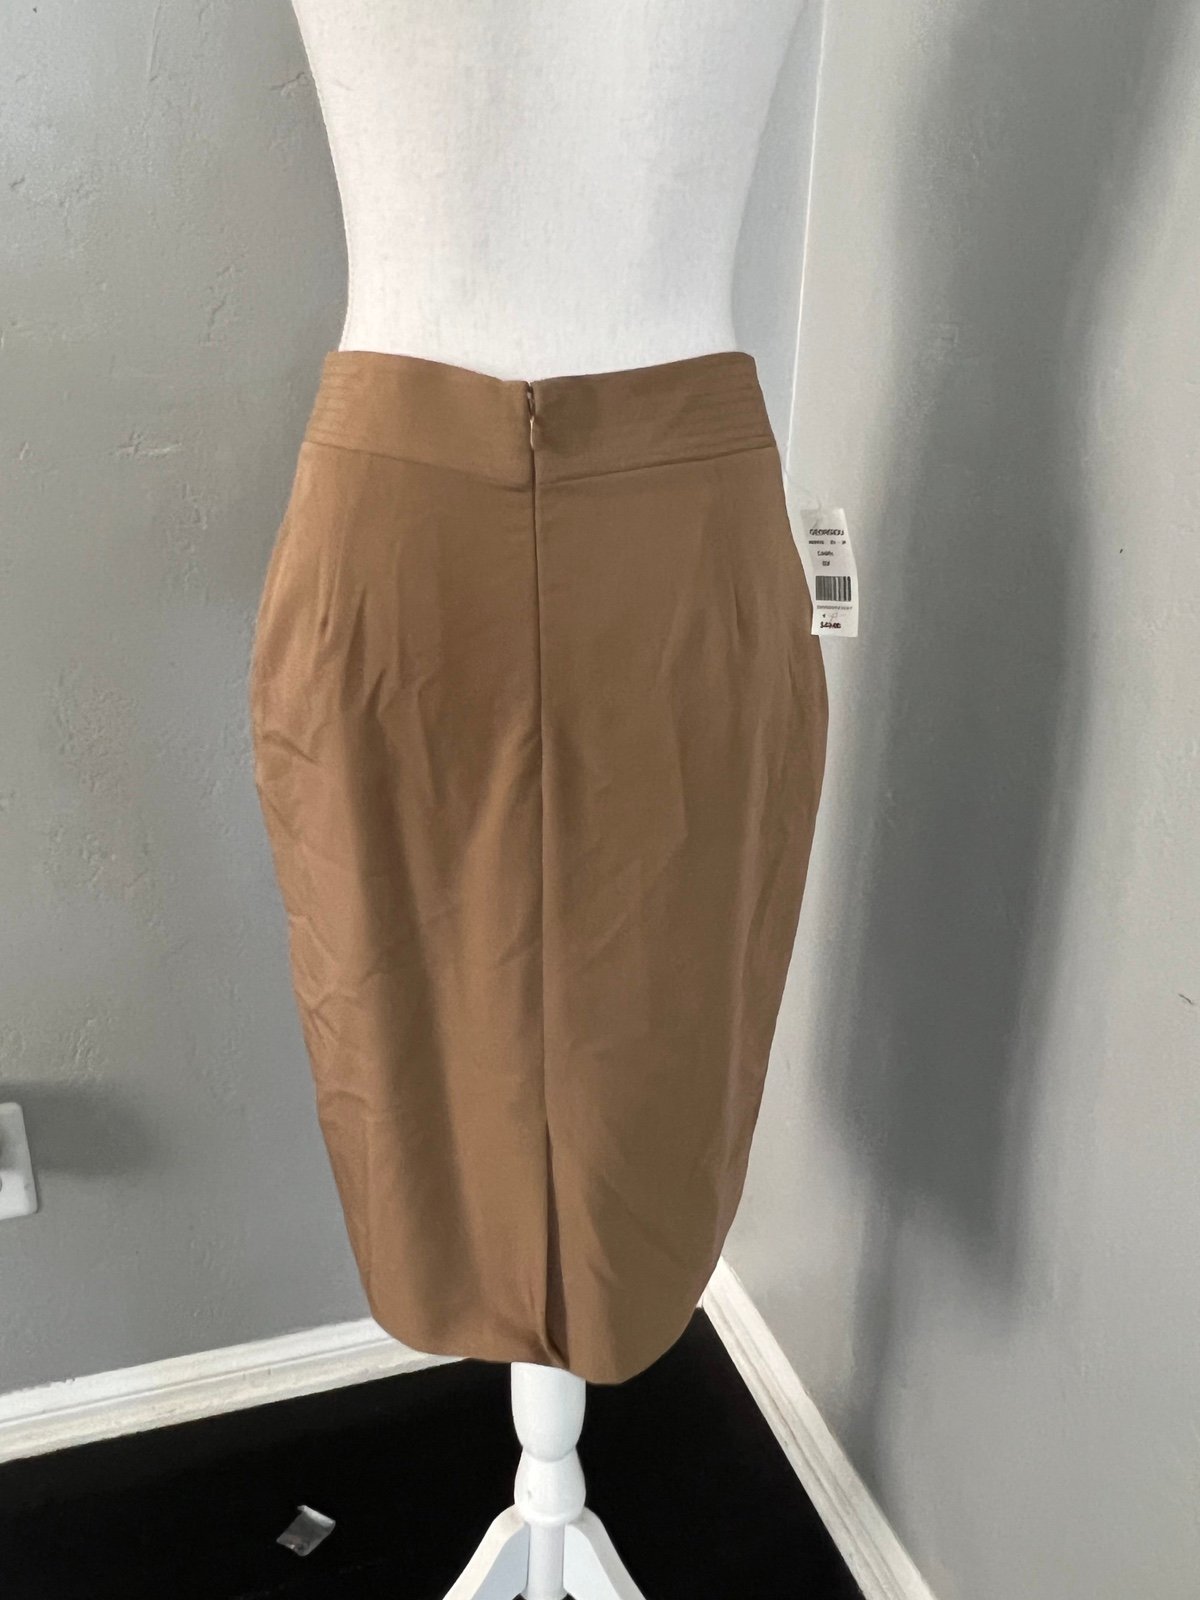 Latest  Georgiou Studio  Skirt size 6 ksSUht7Vk for sale